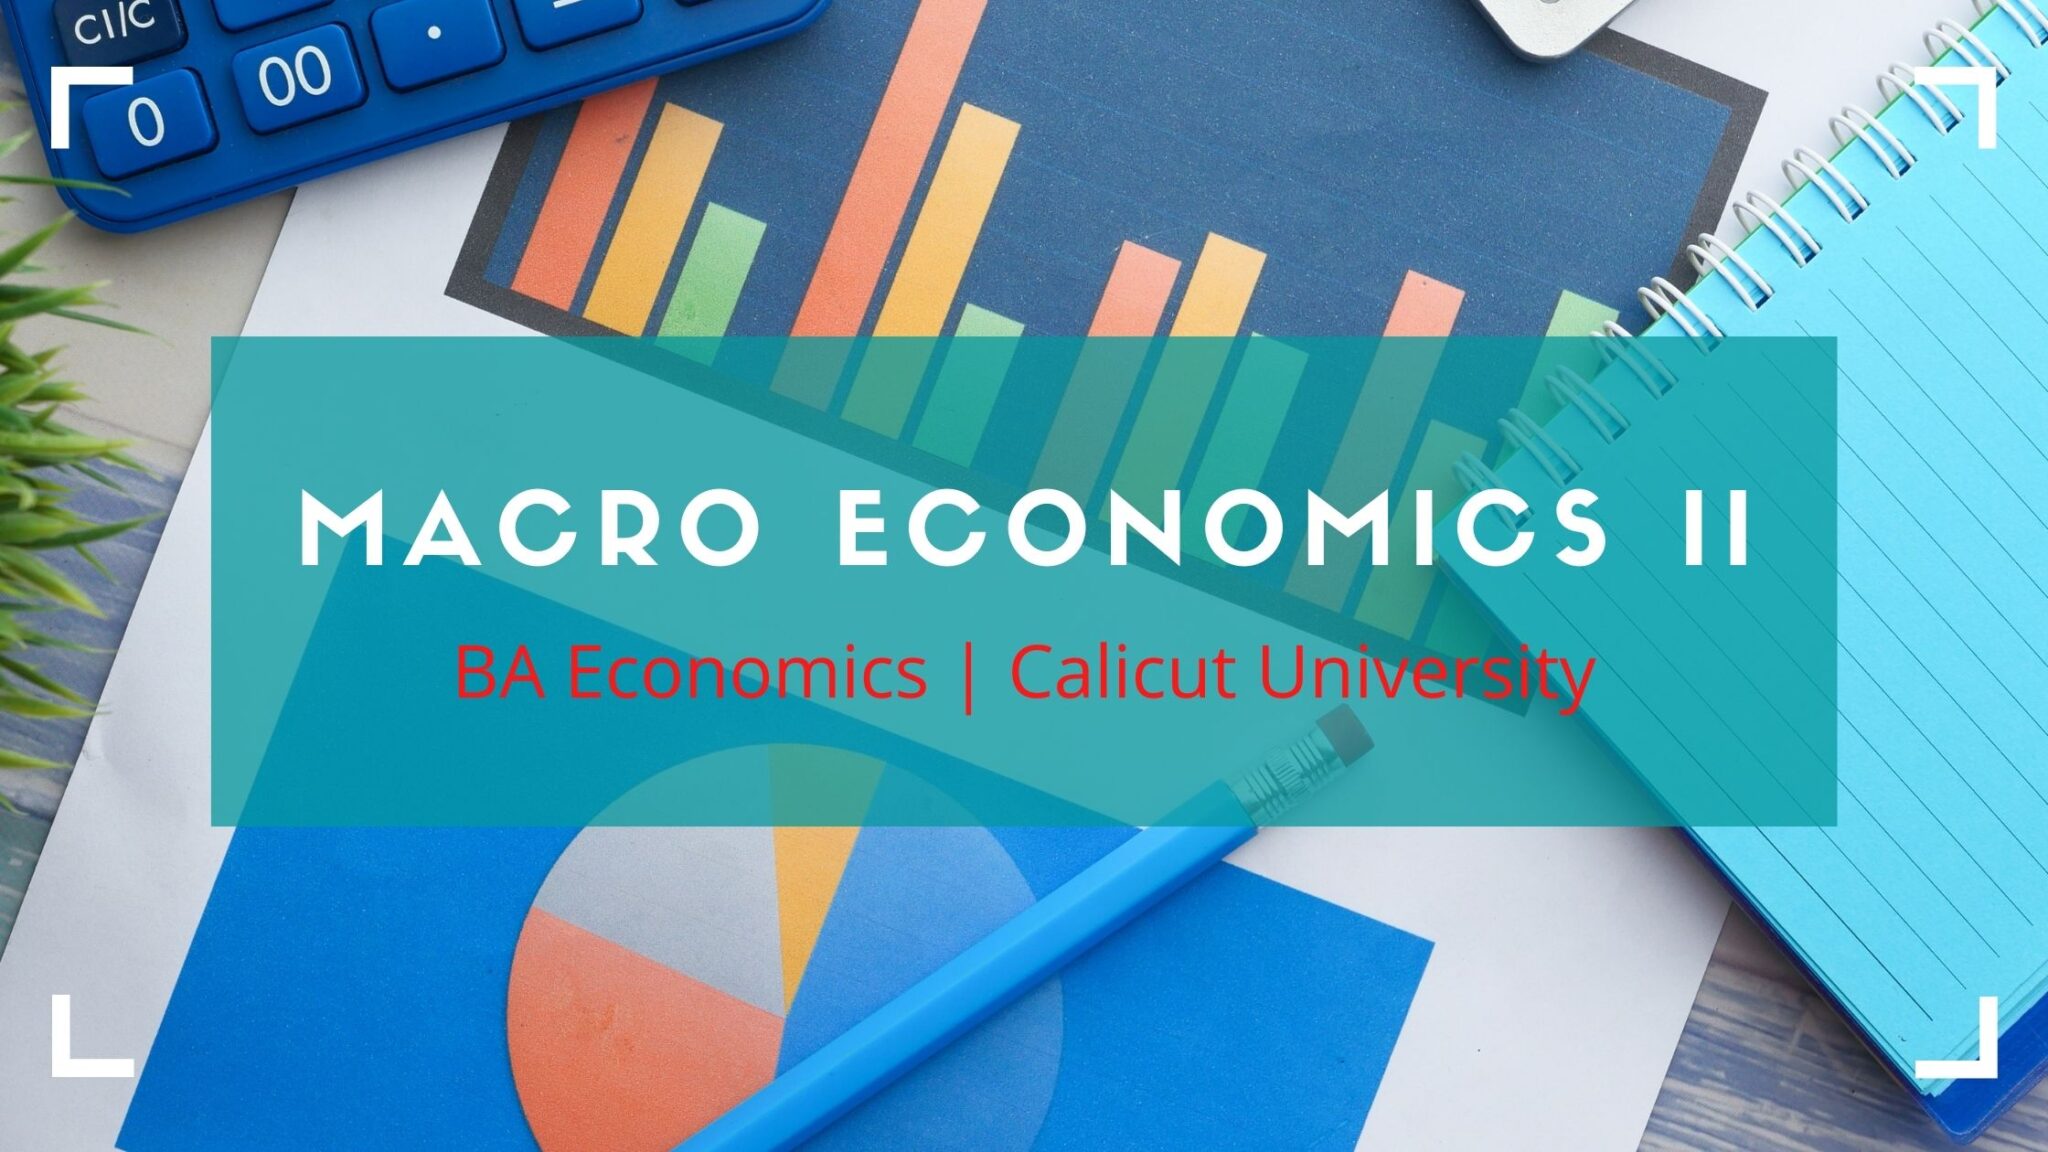 Macro Economics II Previous Question Paper for BA Economics